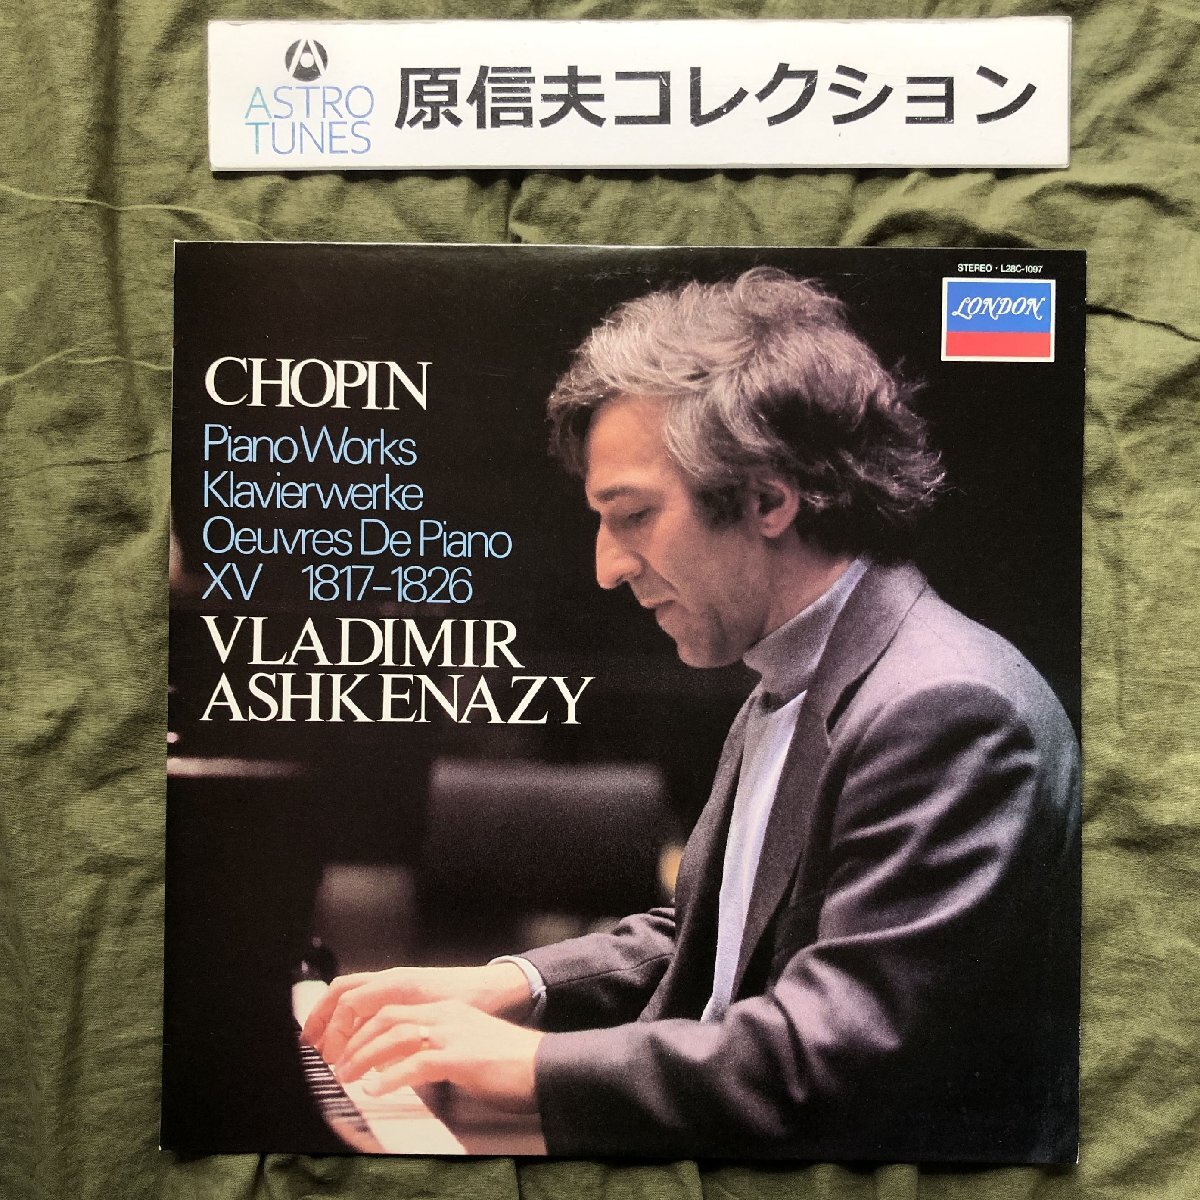 原信夫Collection 傷なし美盤 美ジャケ レア盤 1981年 国内盤 ウラディーミル・アシュケナージ LPレコード Chopin Piano Works Polonaise_画像1